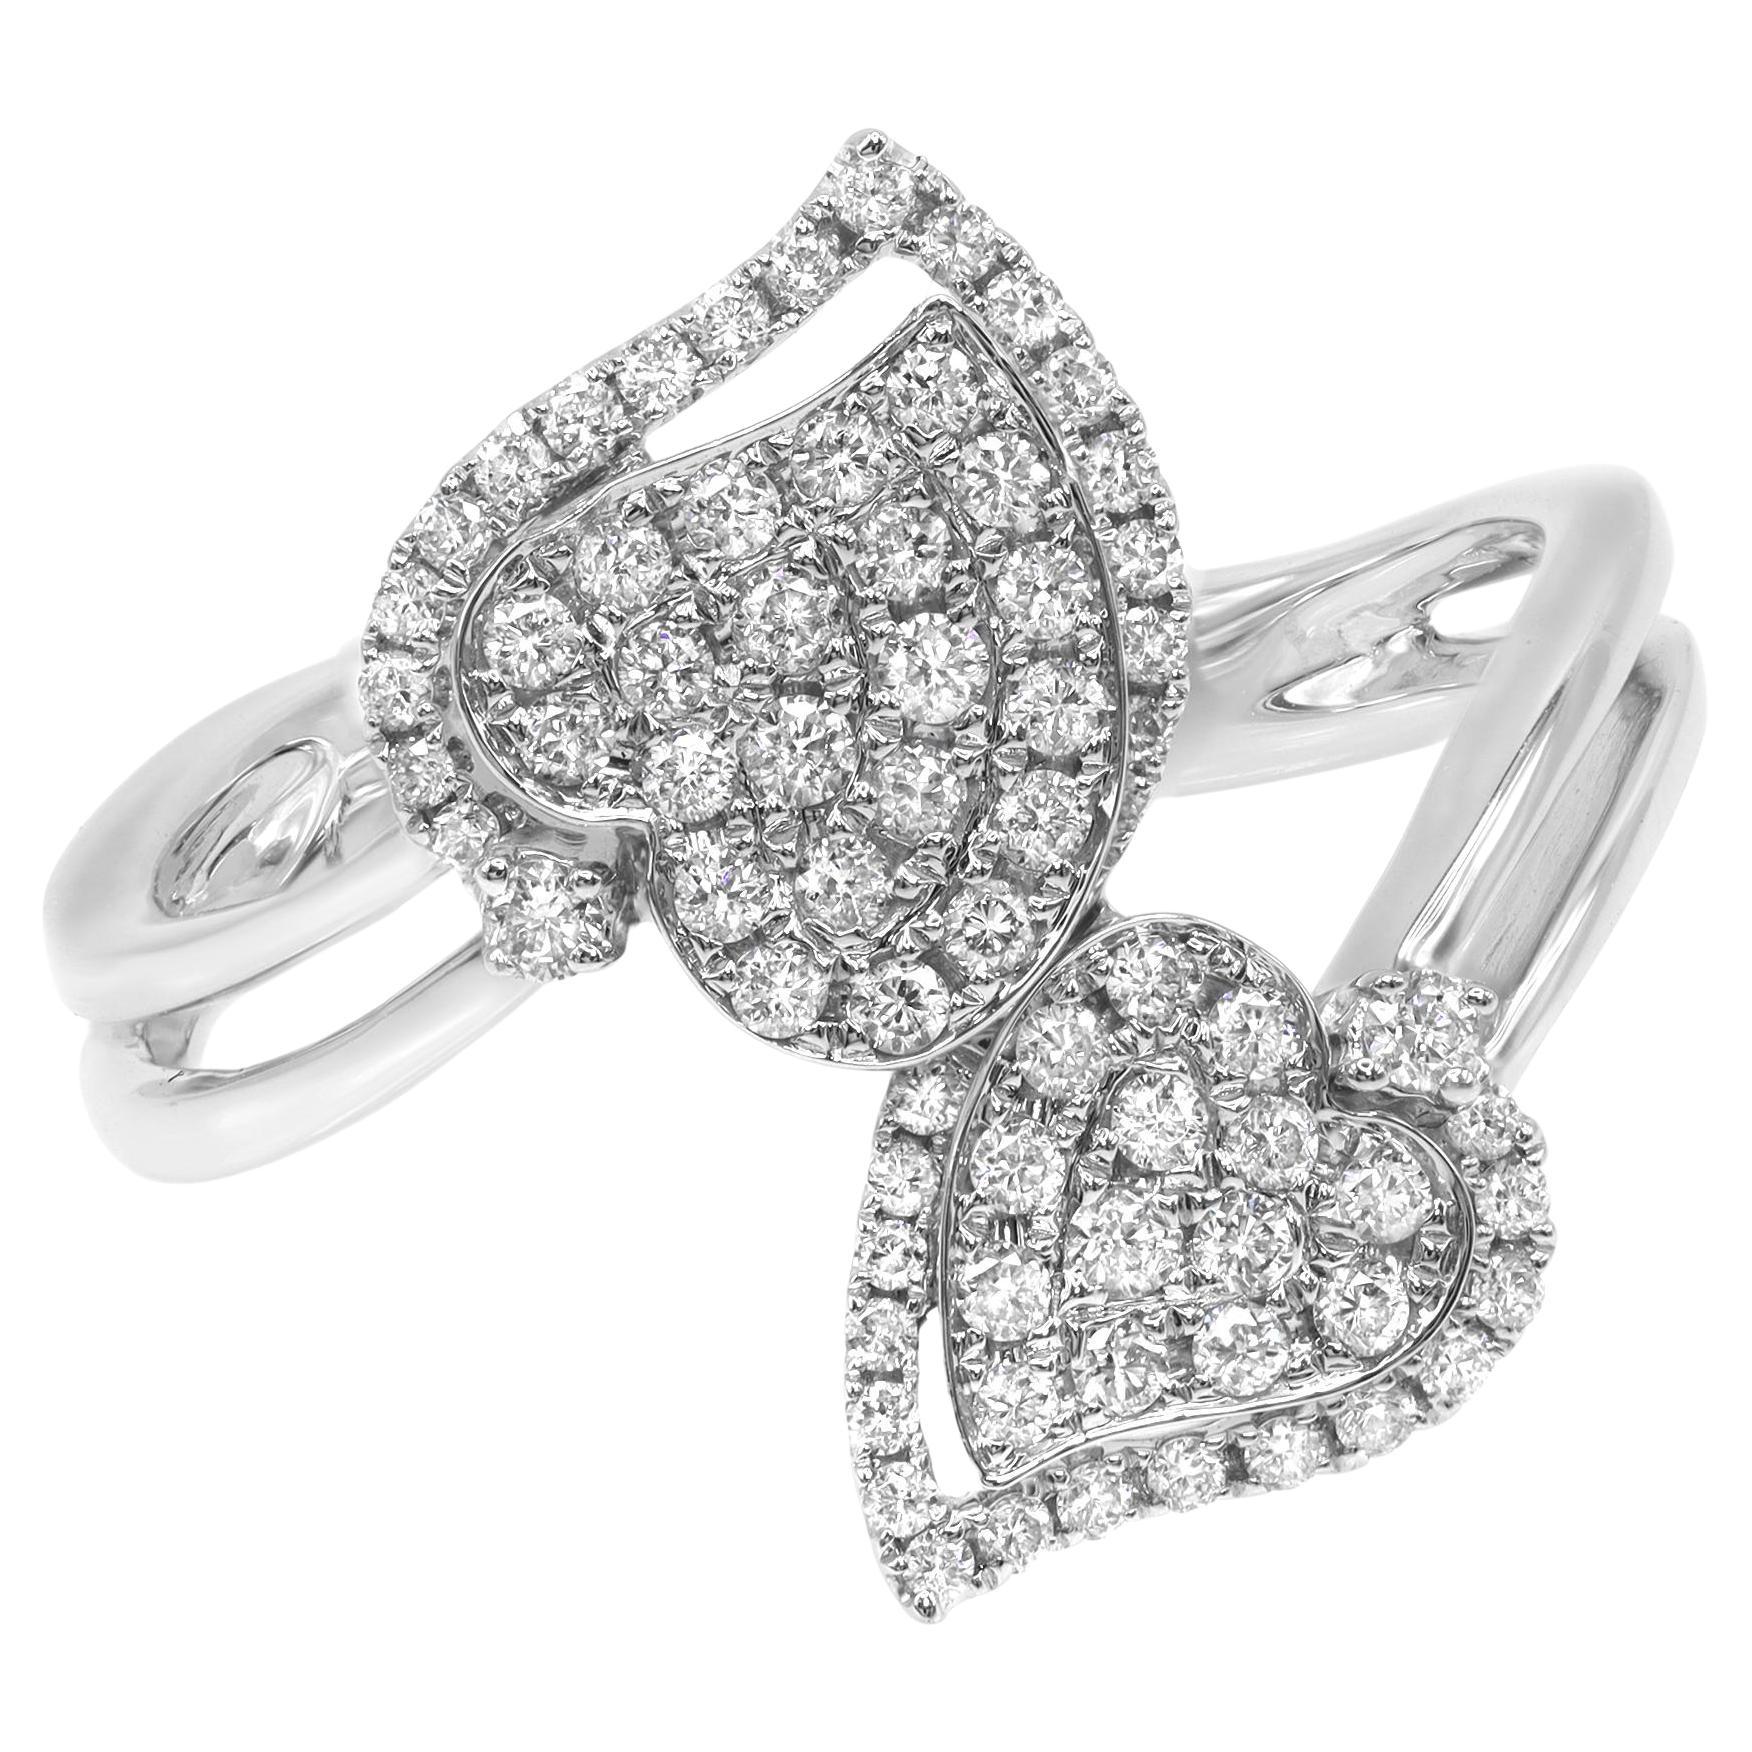 Rachel Koen Double Heart Diamond Ring 18K White Gold 0.53Cttw